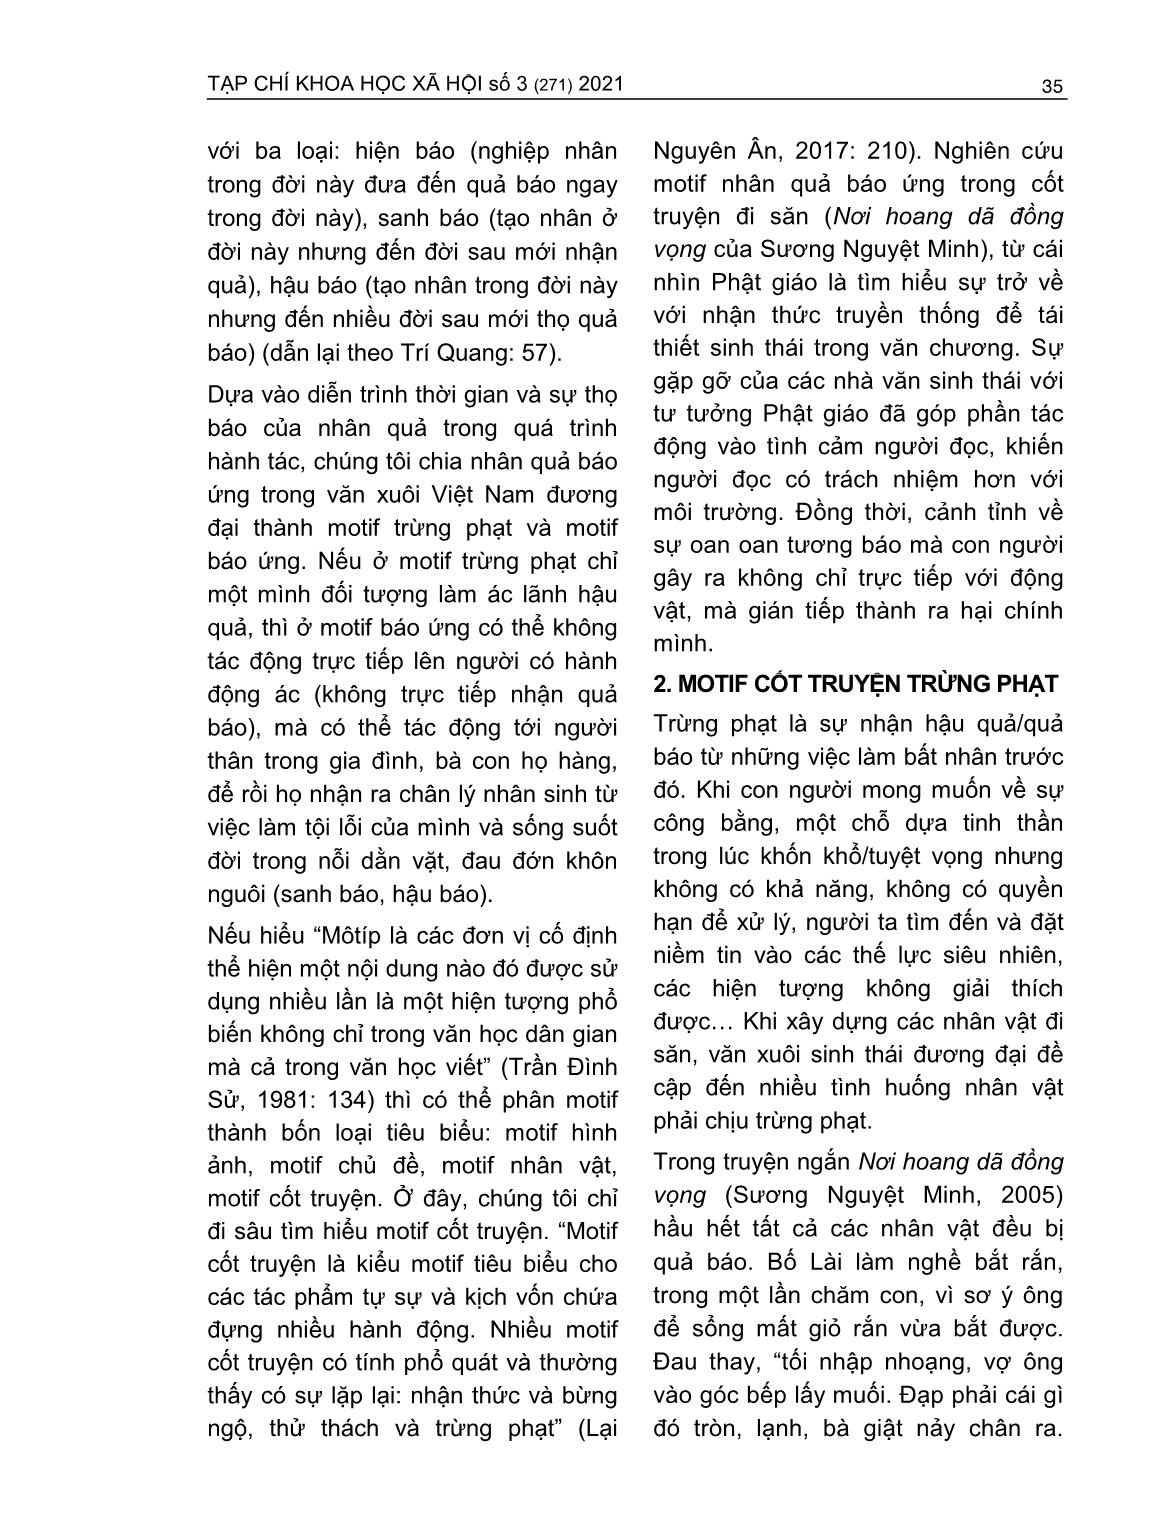 Motif nhân quả báo ứng trong văn xuôi sinh thái Việt Nam đương đại từ góc nhìn Phật Giáo trang 3